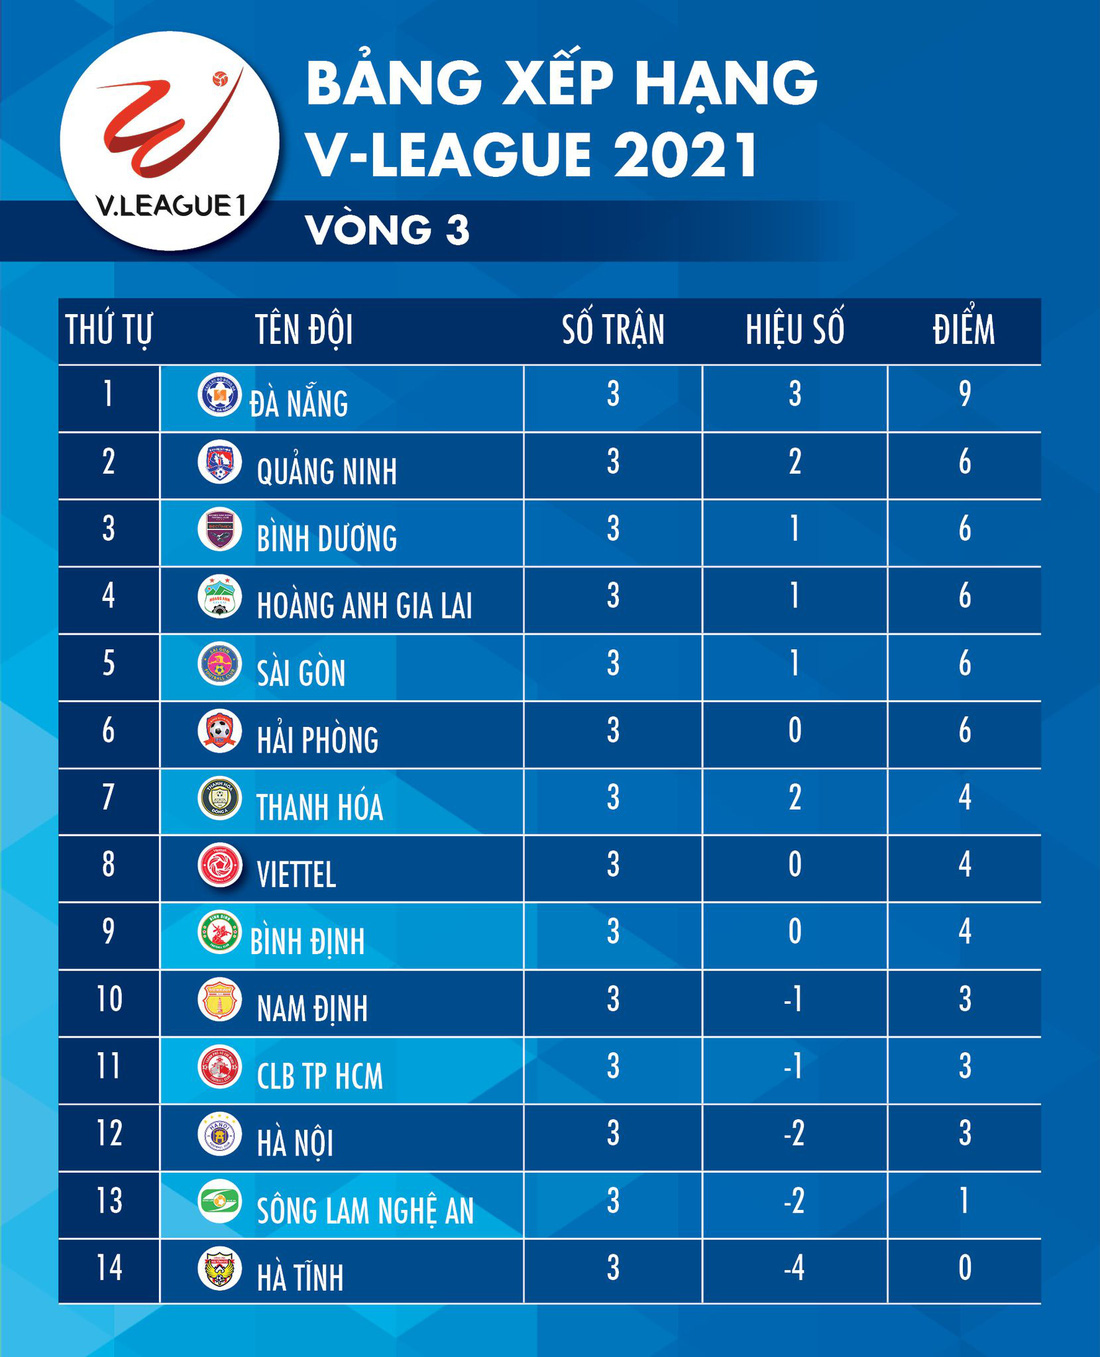 Kết quả, bảng xếp hạng V-League 2021: Viettel đã biết thắng, HAGL vào tốp 4 - Ảnh 2.